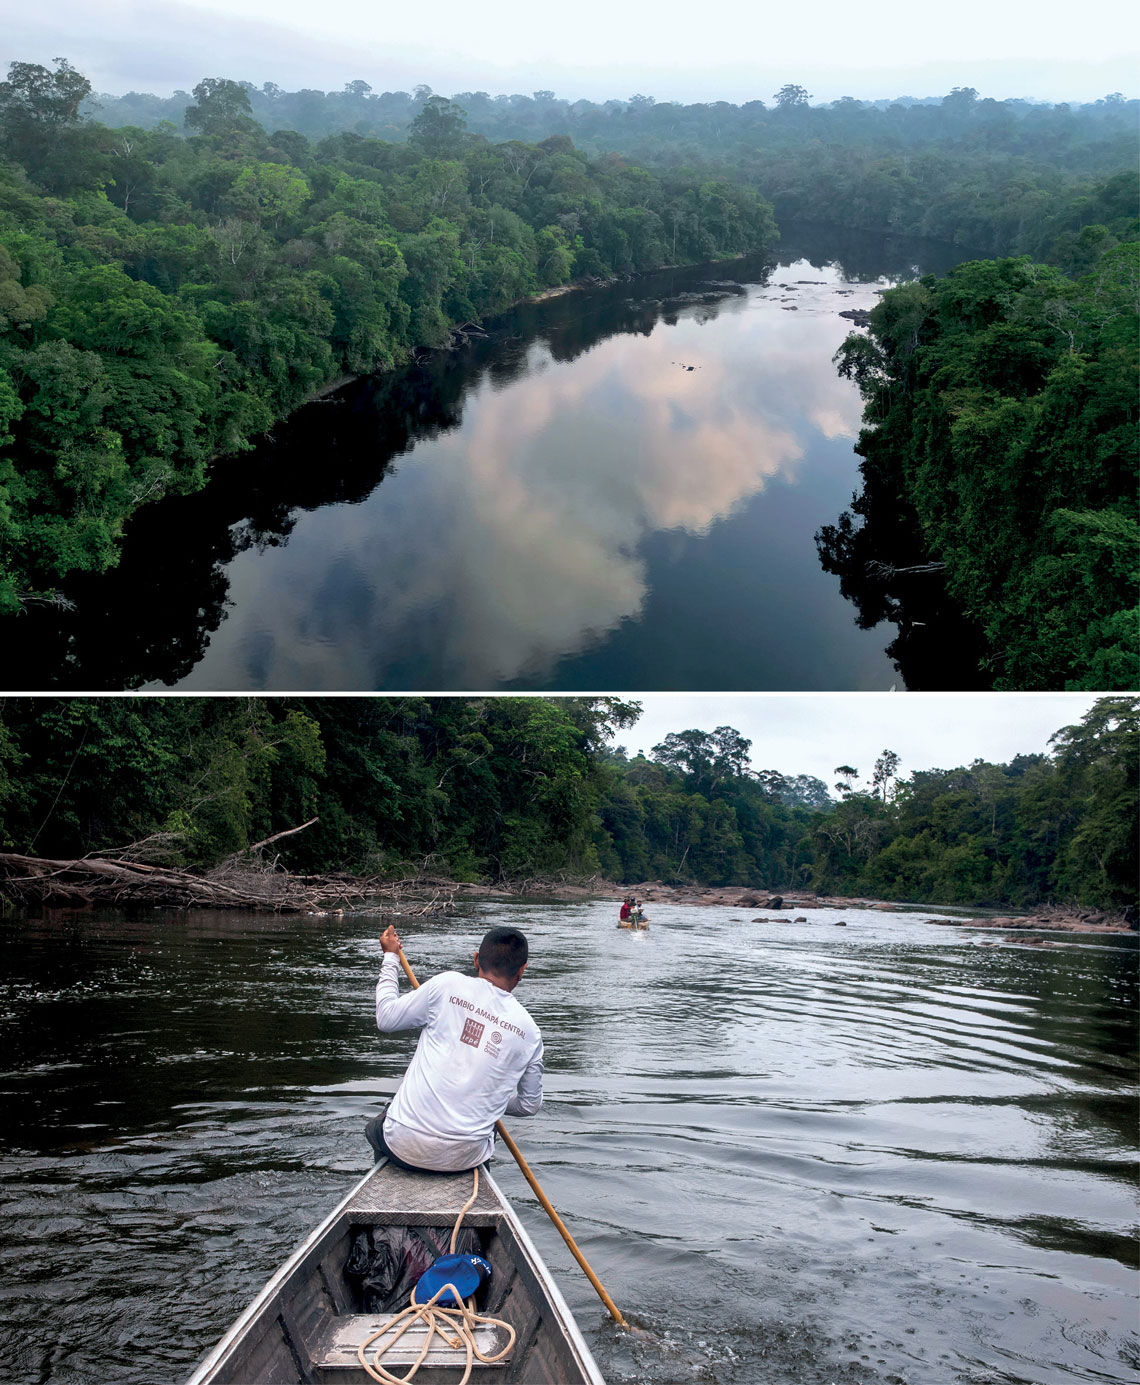  Navegar pelo rio Amapari requer a perícia dos proeiros (embaixo) para superar as corredeiras